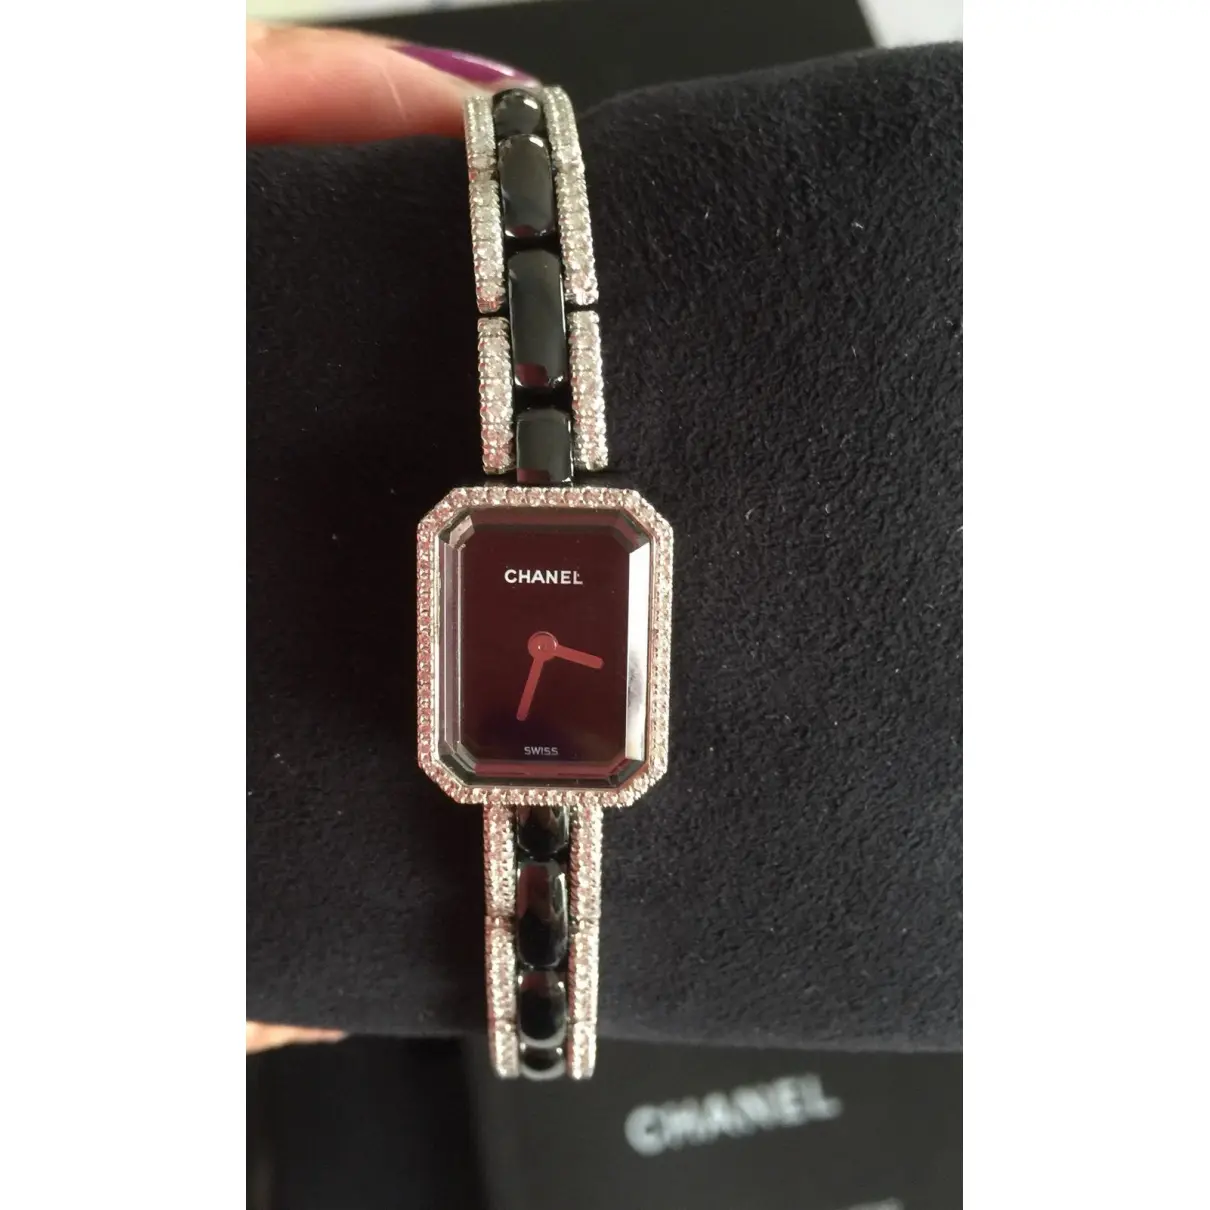 Première Mini watch Chanel